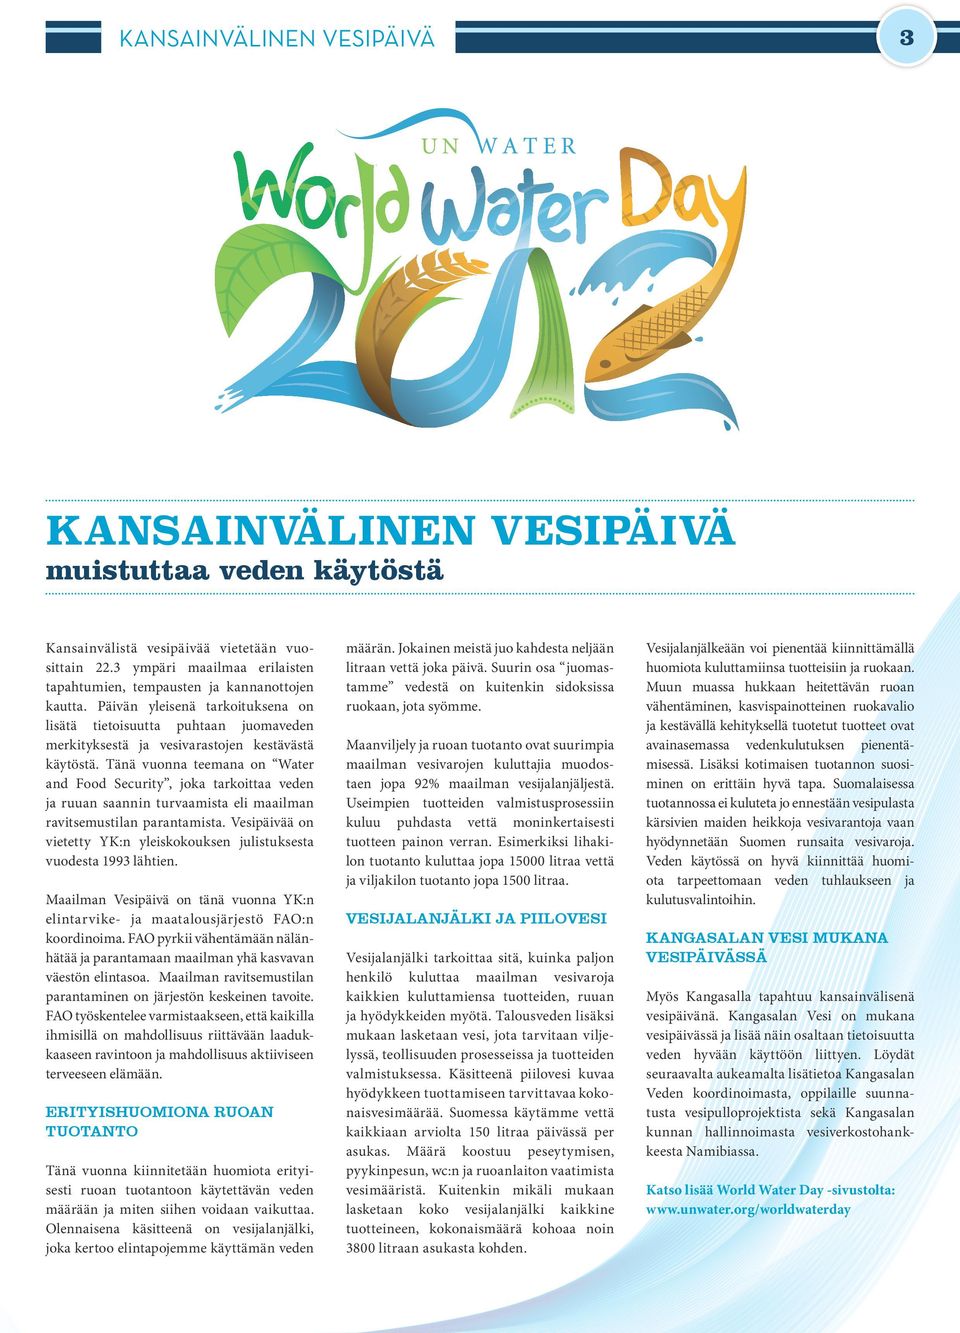 Päivän yleisenä tarkoituksena on lisätä tietoisuutta puhtaan juomaveden merkityksestä ja vesivarastojen kestävästä käytöstä.